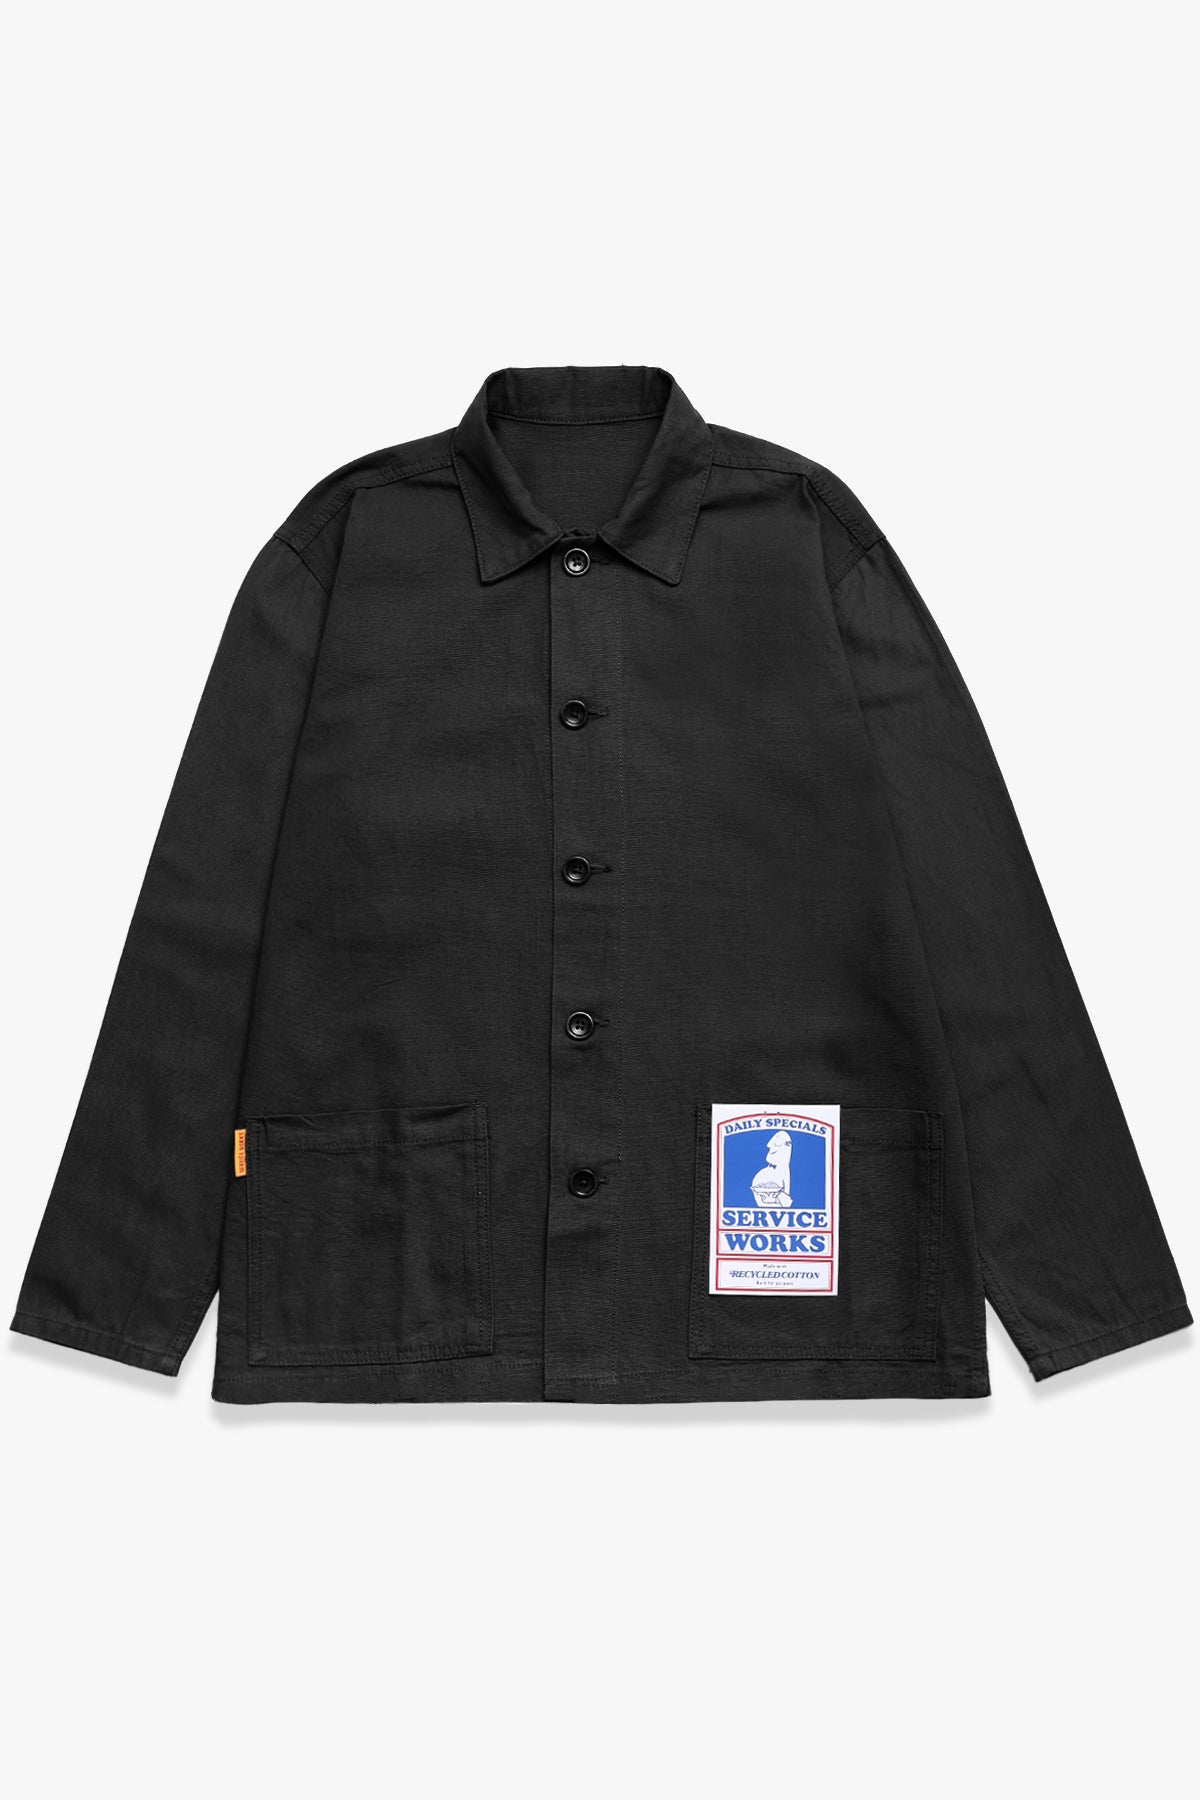 Service Works - Trade Jacket - Black